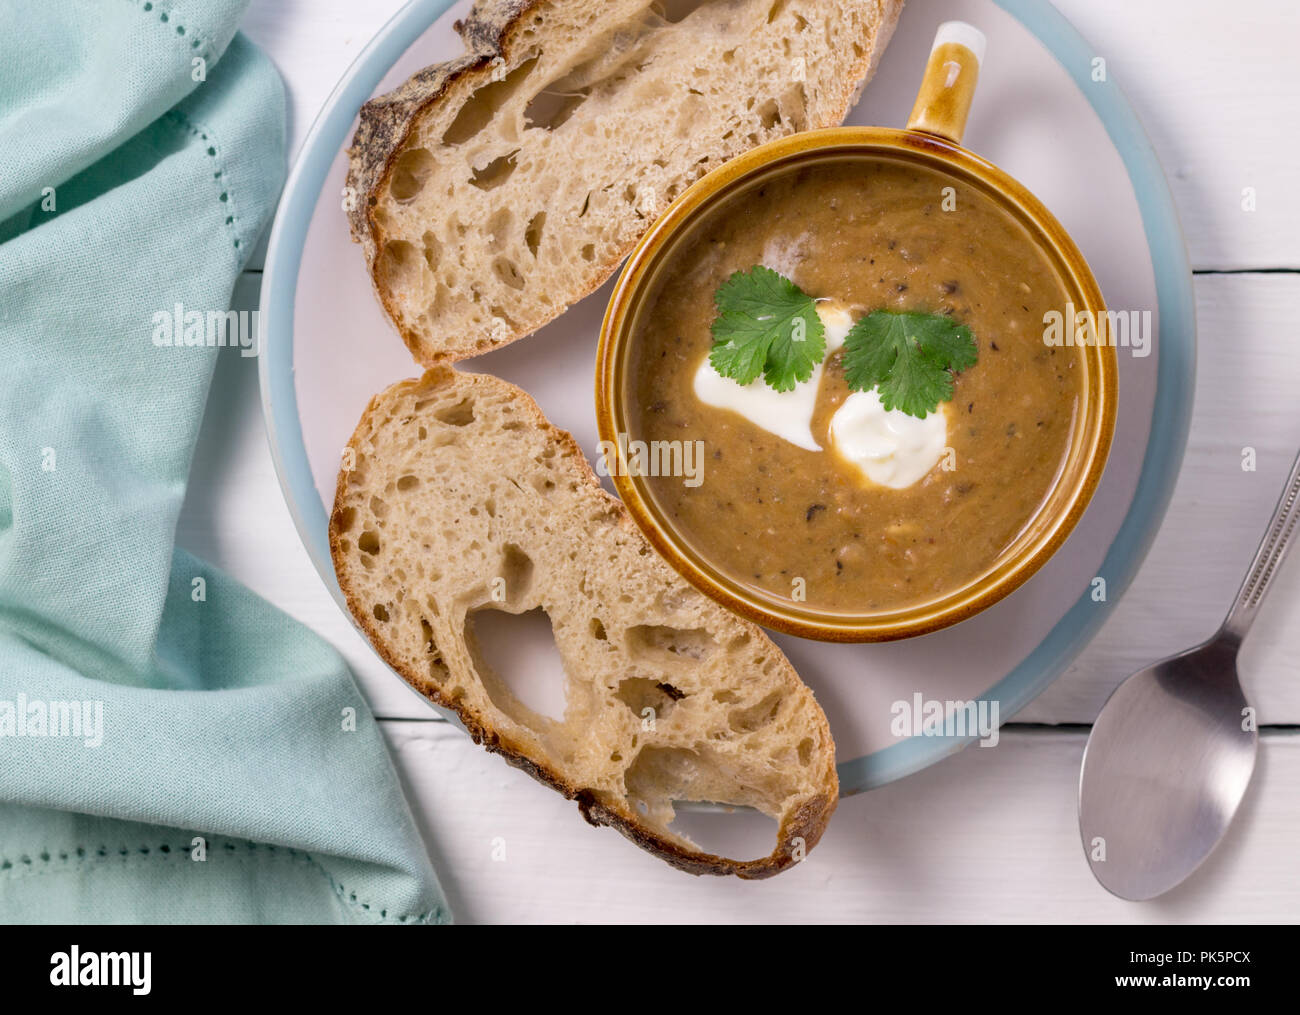 Gemüsesuppe mit Scheiben Brot - Ansicht von oben Foto auf weißen Tisch Stockfoto